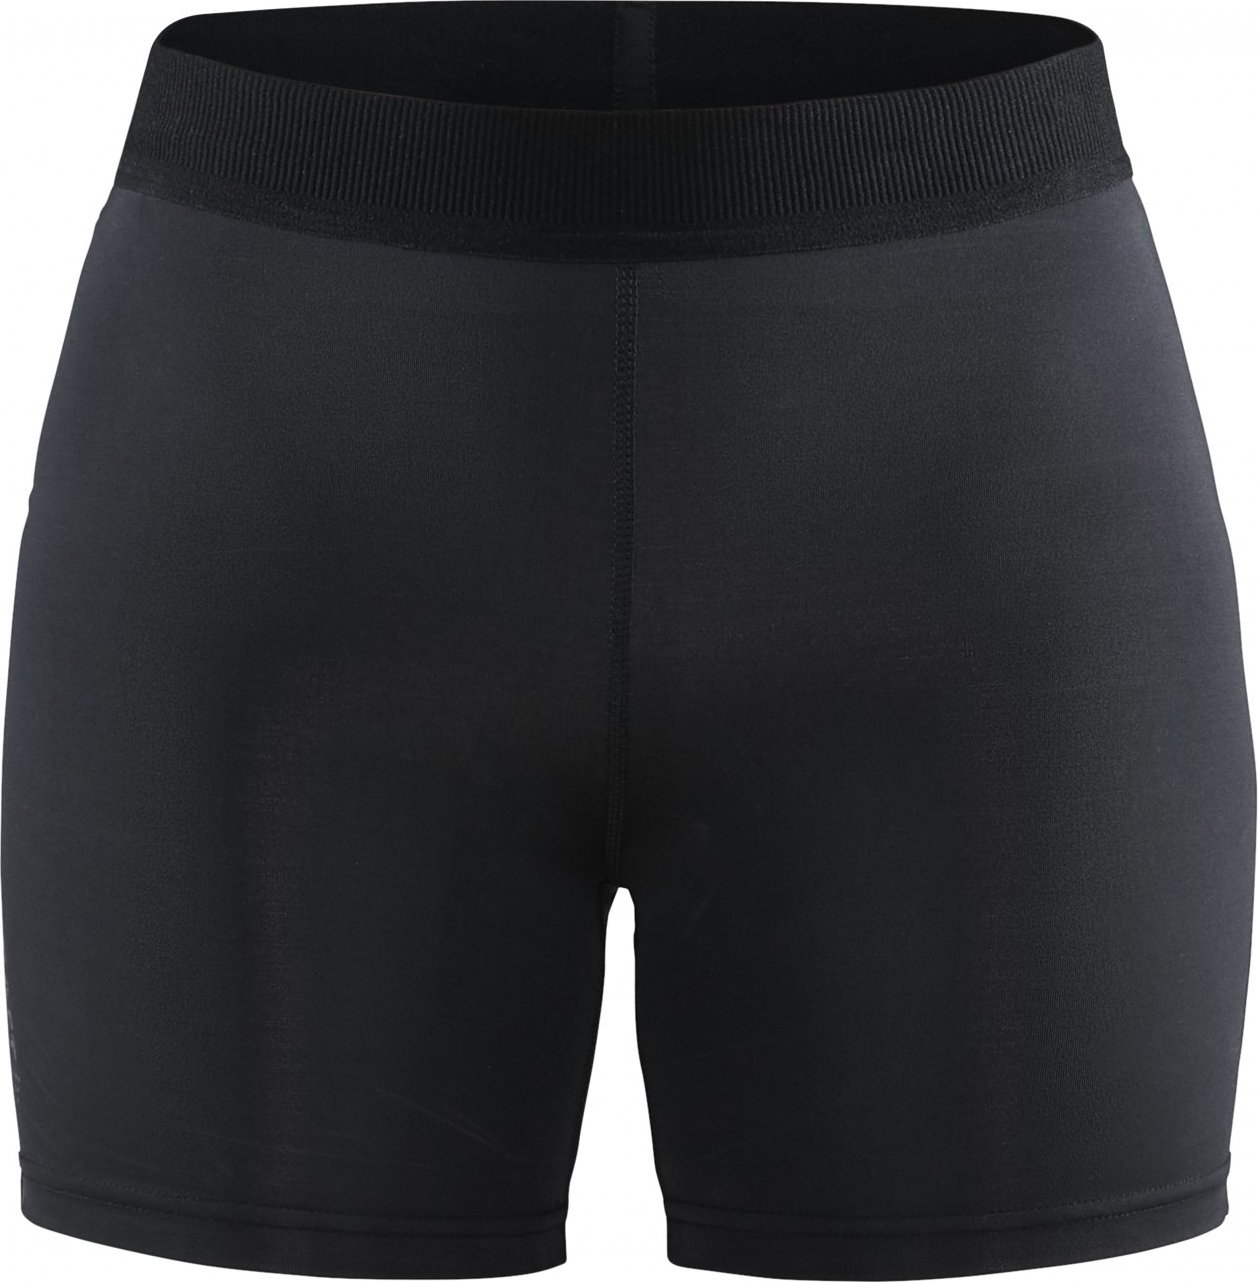 Dámské elastické běžecké kalhoty CRAFT Vent černé Velikost: XS